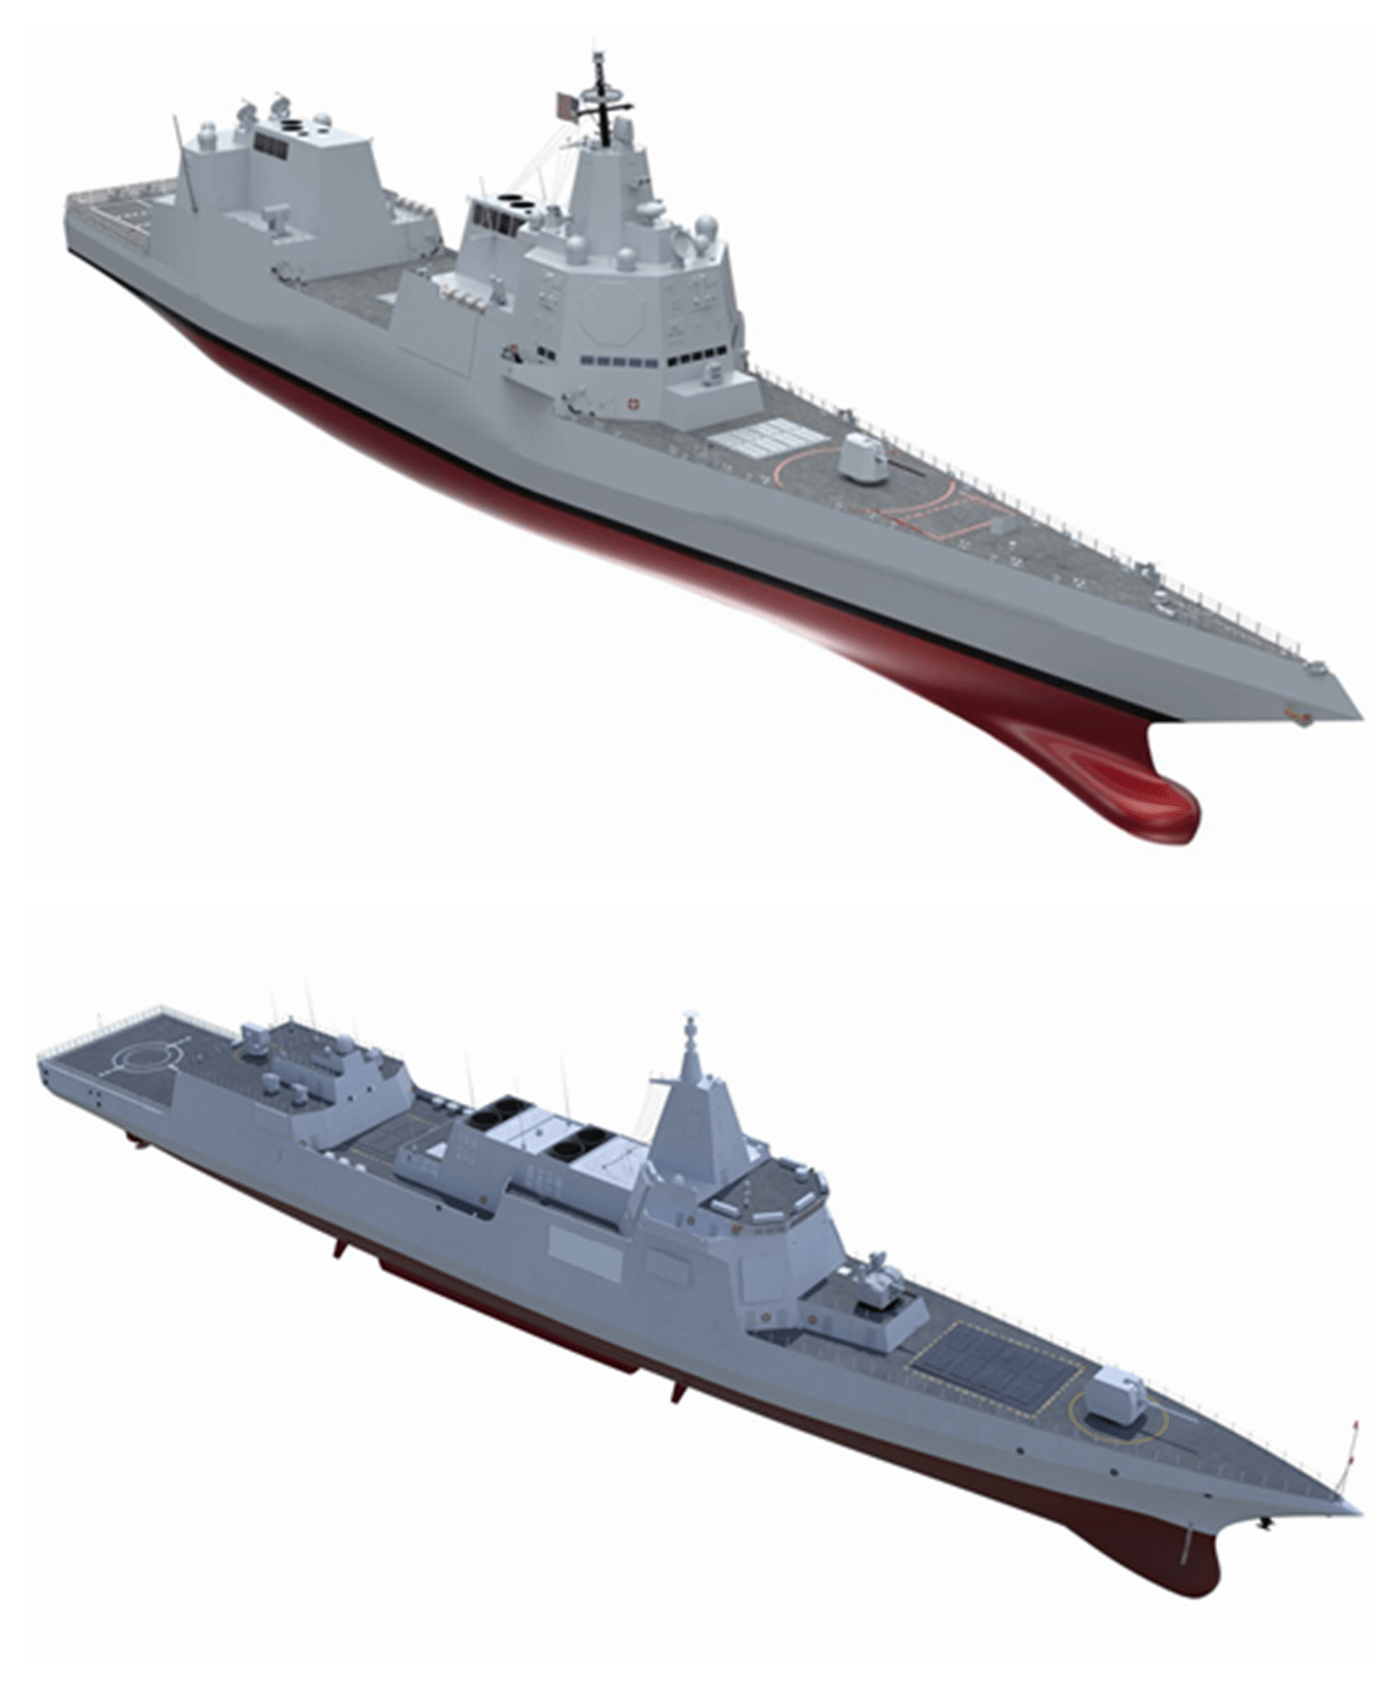 原创像是055和伯克的爱情结晶美国海军公布未来驱逐舰6年后建造